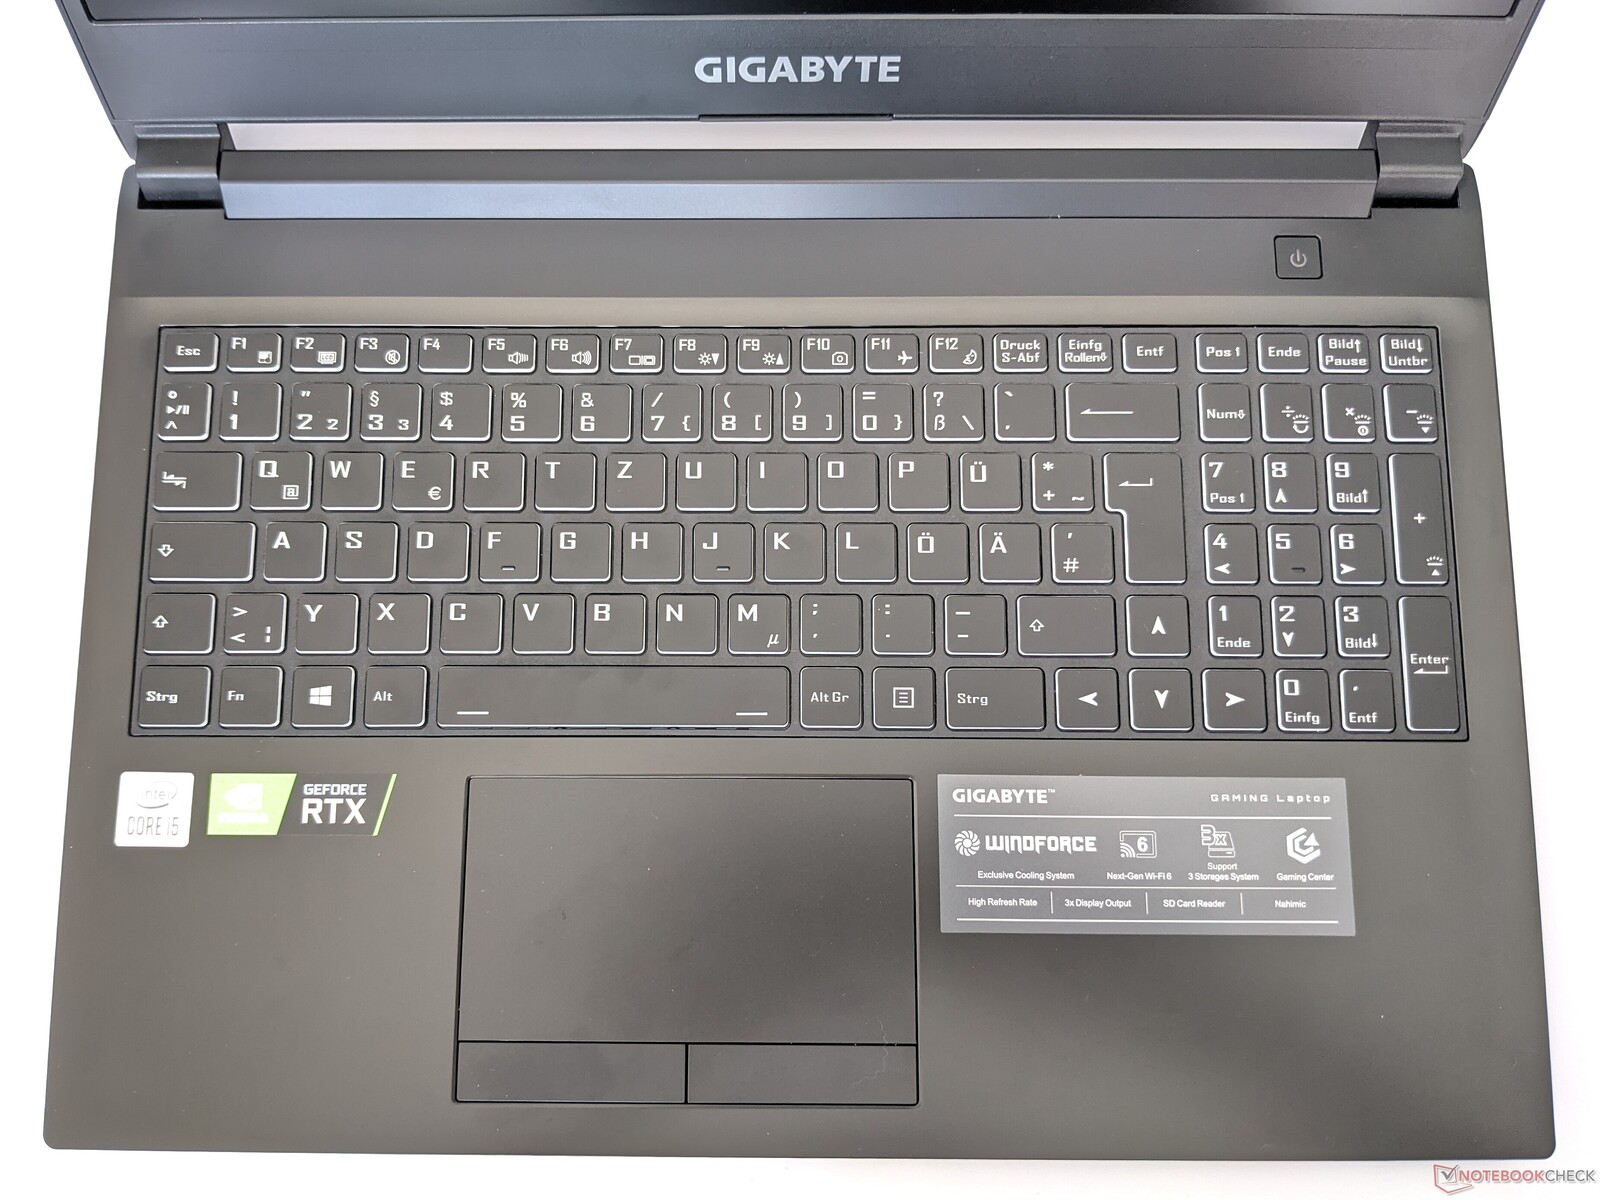 Gigabyte g5 kc. Ноутбук Gigabyte g5 Kc. Gigabyte g5 Kc-5ru1130sh. G5 Kc-5us1130sh.